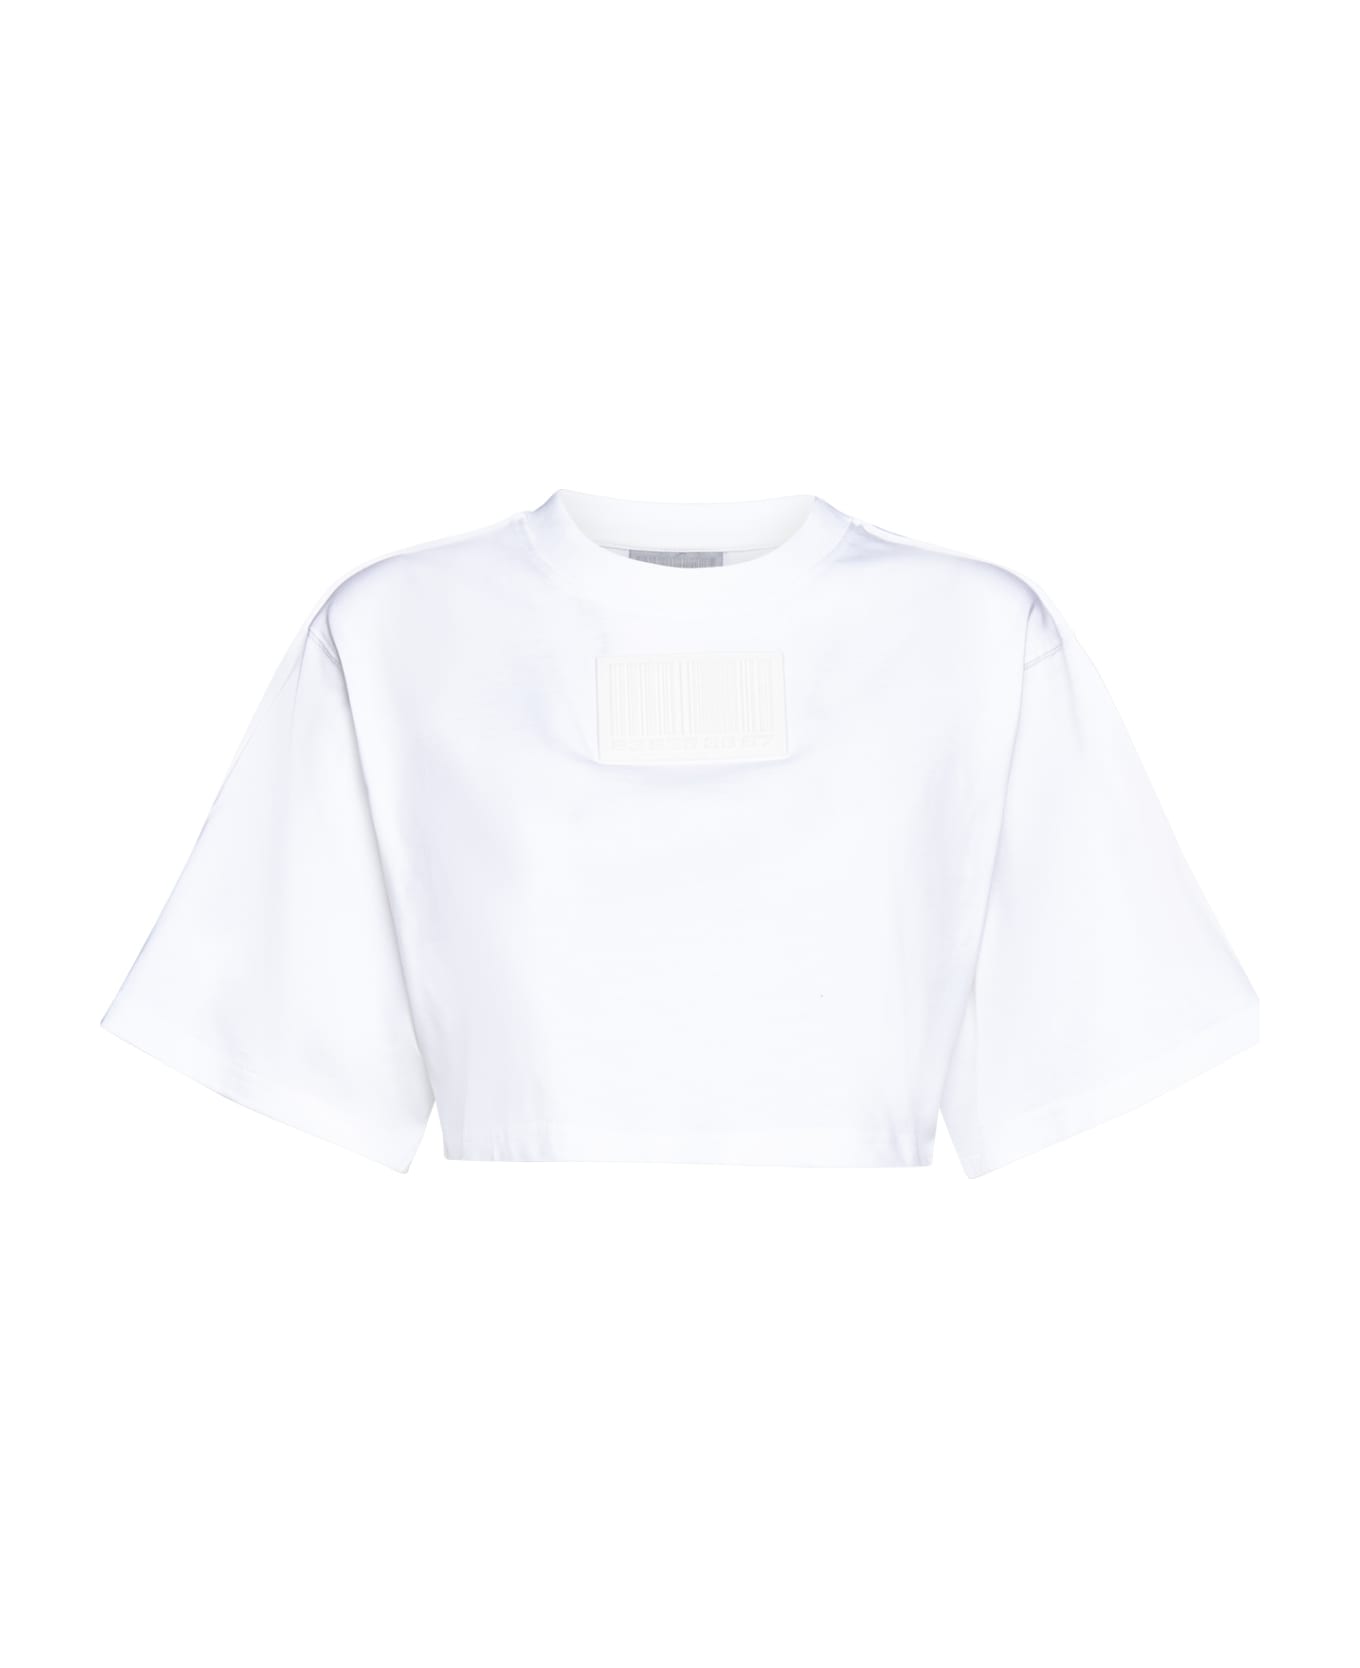 VTMNTS T-Shirt - White